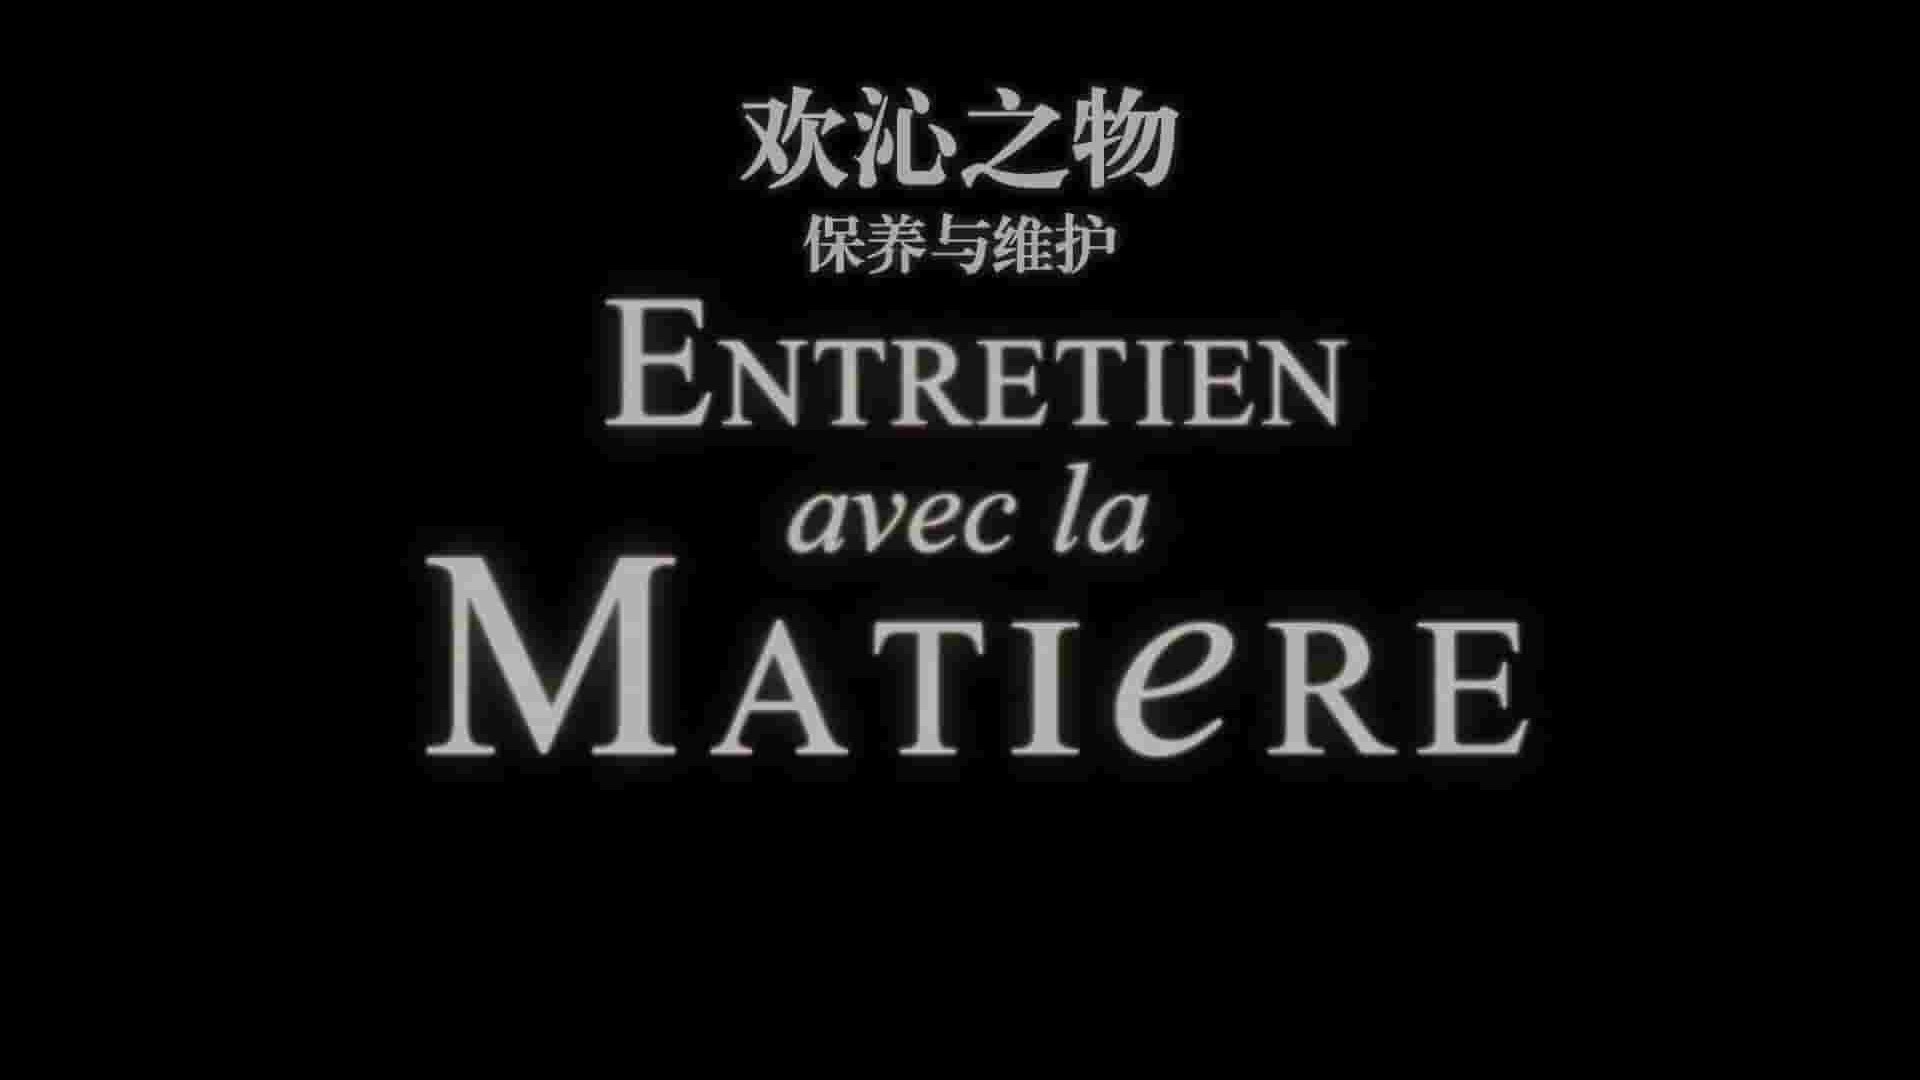 法国纪录片《走进材质/欢沁之物 Entretien avec la Matière 2007》 第1季全5集 英语中字 1080P高清网盘下载